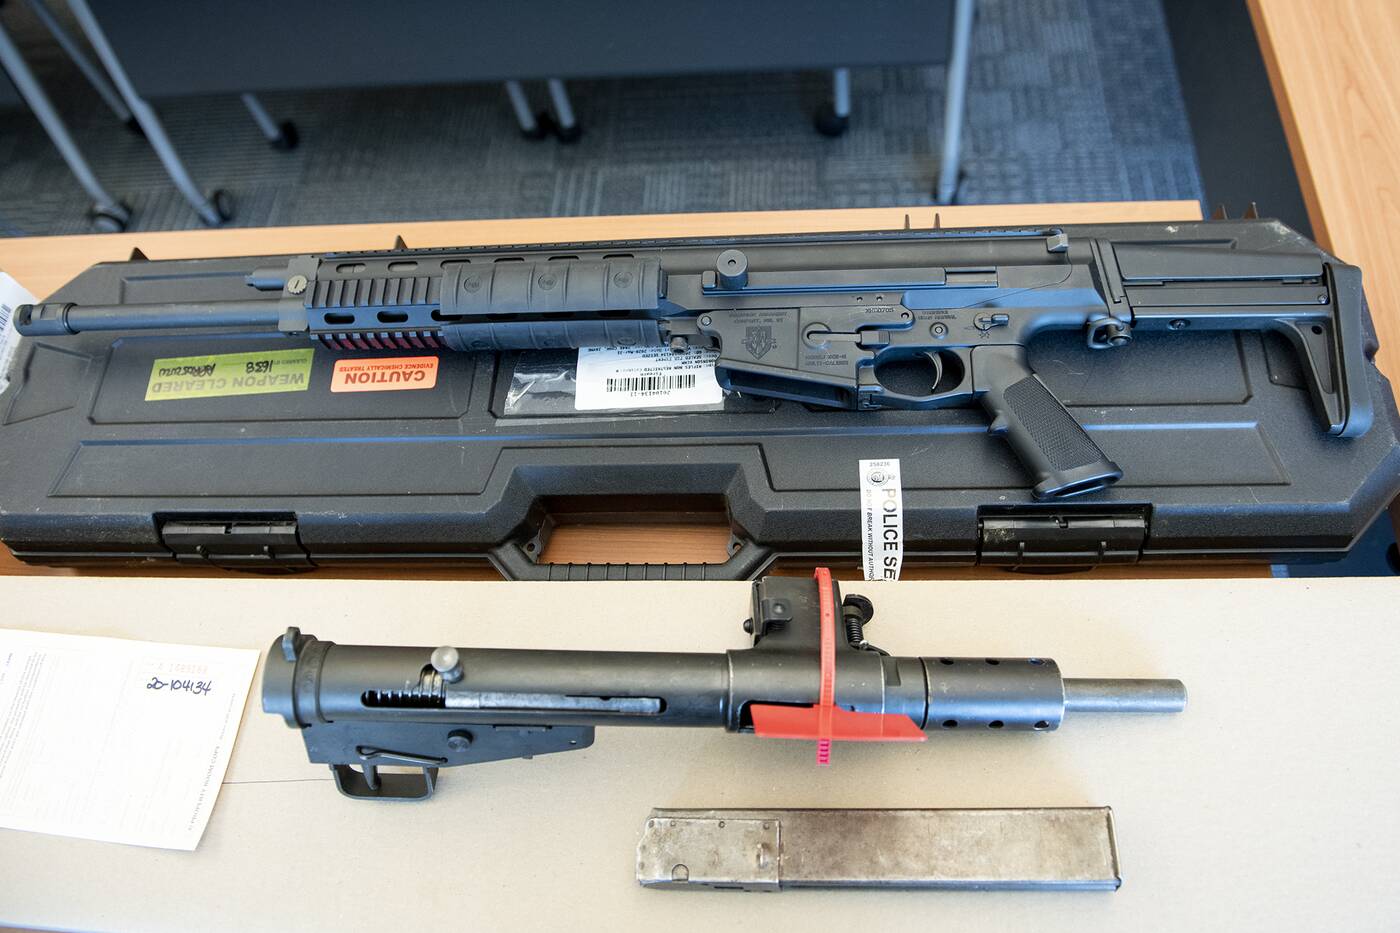 long guns seized by York Regional Police